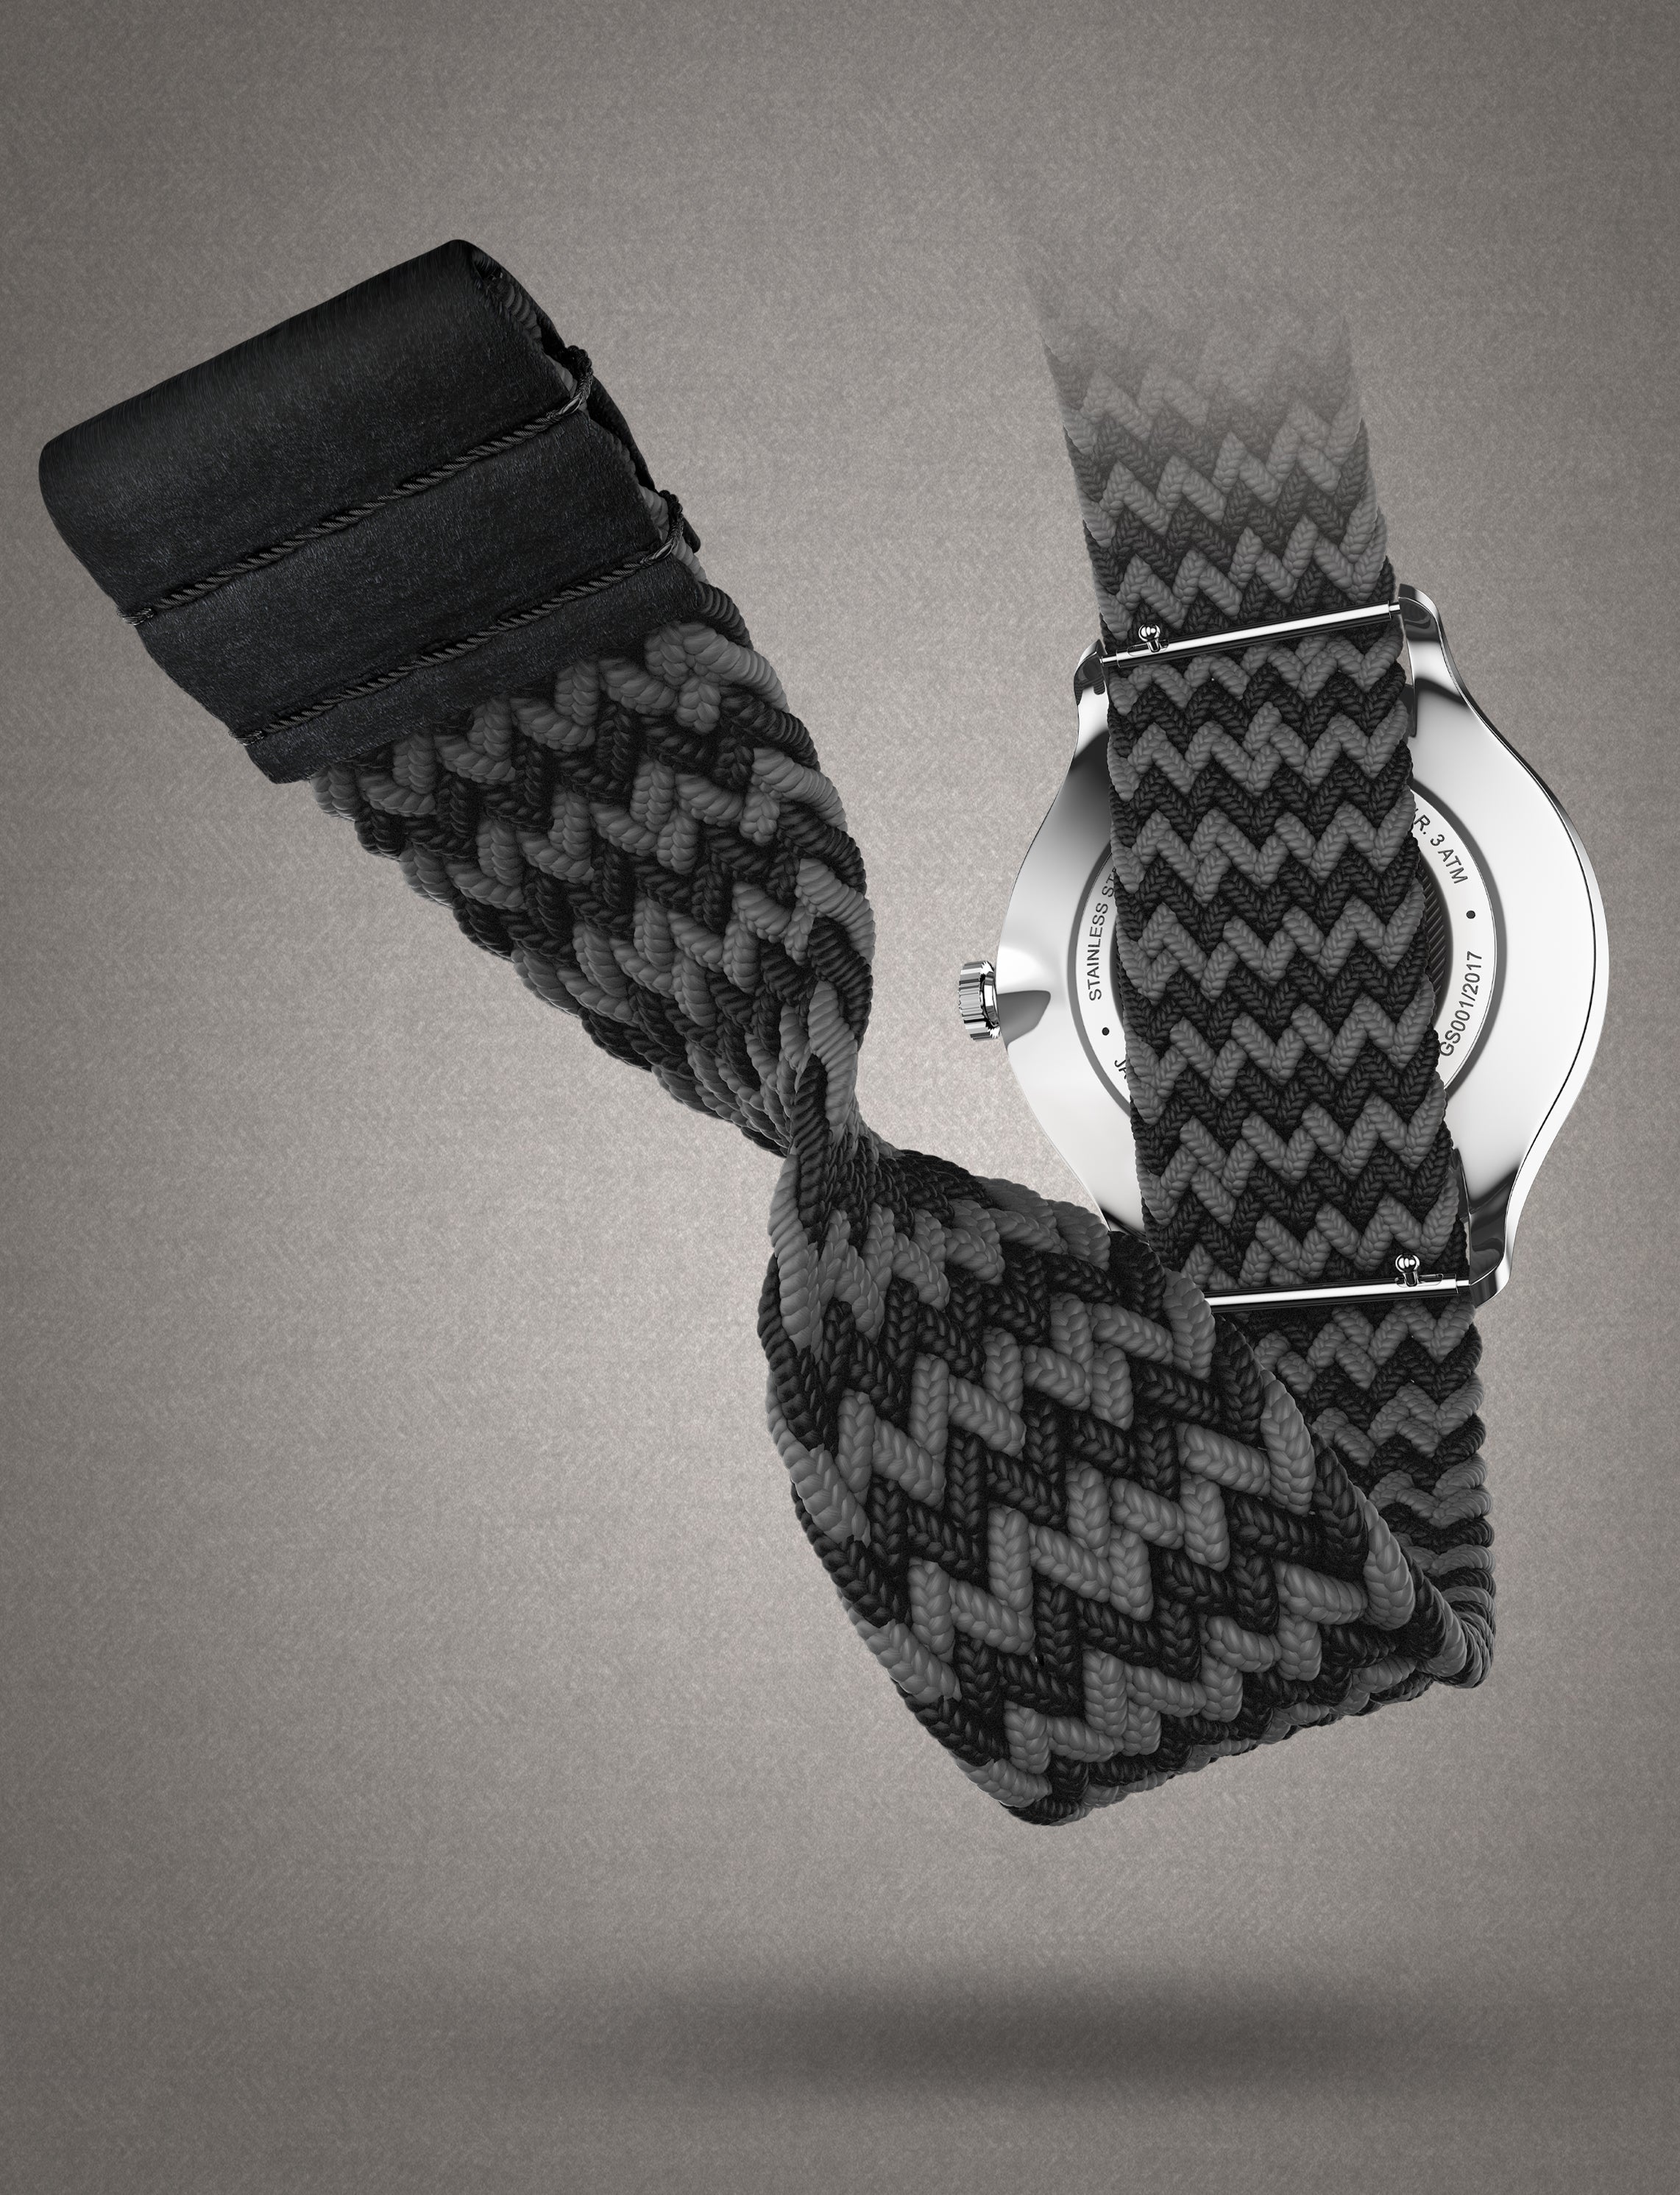 Moment d'être charmé : Les montres Tweed Co. imposent la tendance avec style